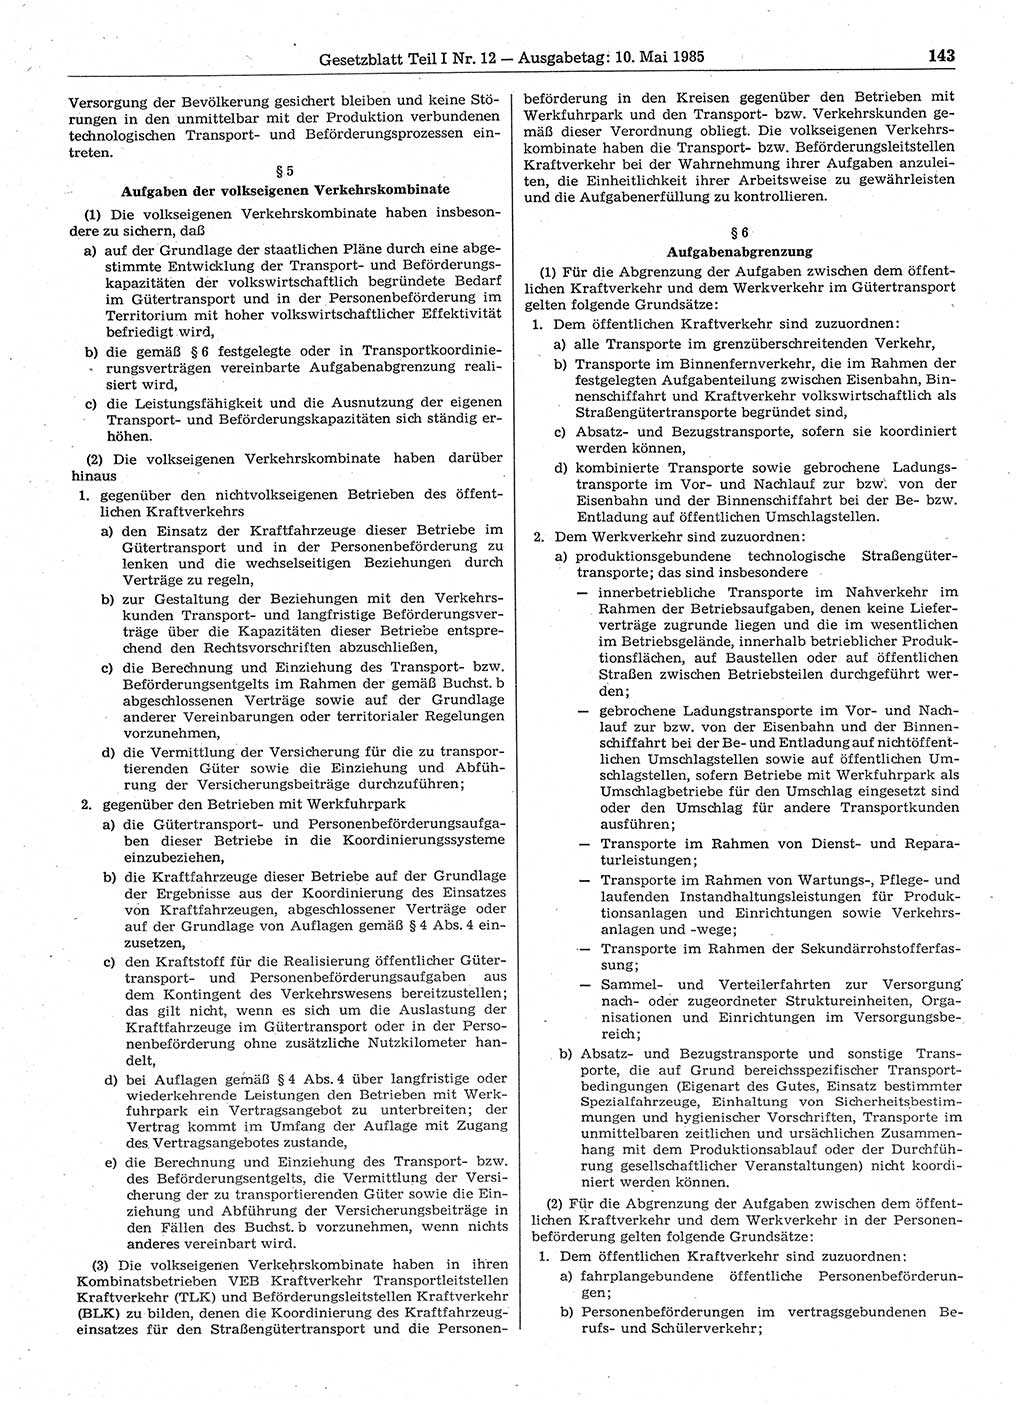 Gesetzblatt (GBl.) der Deutschen Demokratischen Republik (DDR) Teil Ⅰ 1985, Seite 143 (GBl. DDR Ⅰ 1985, S. 143)